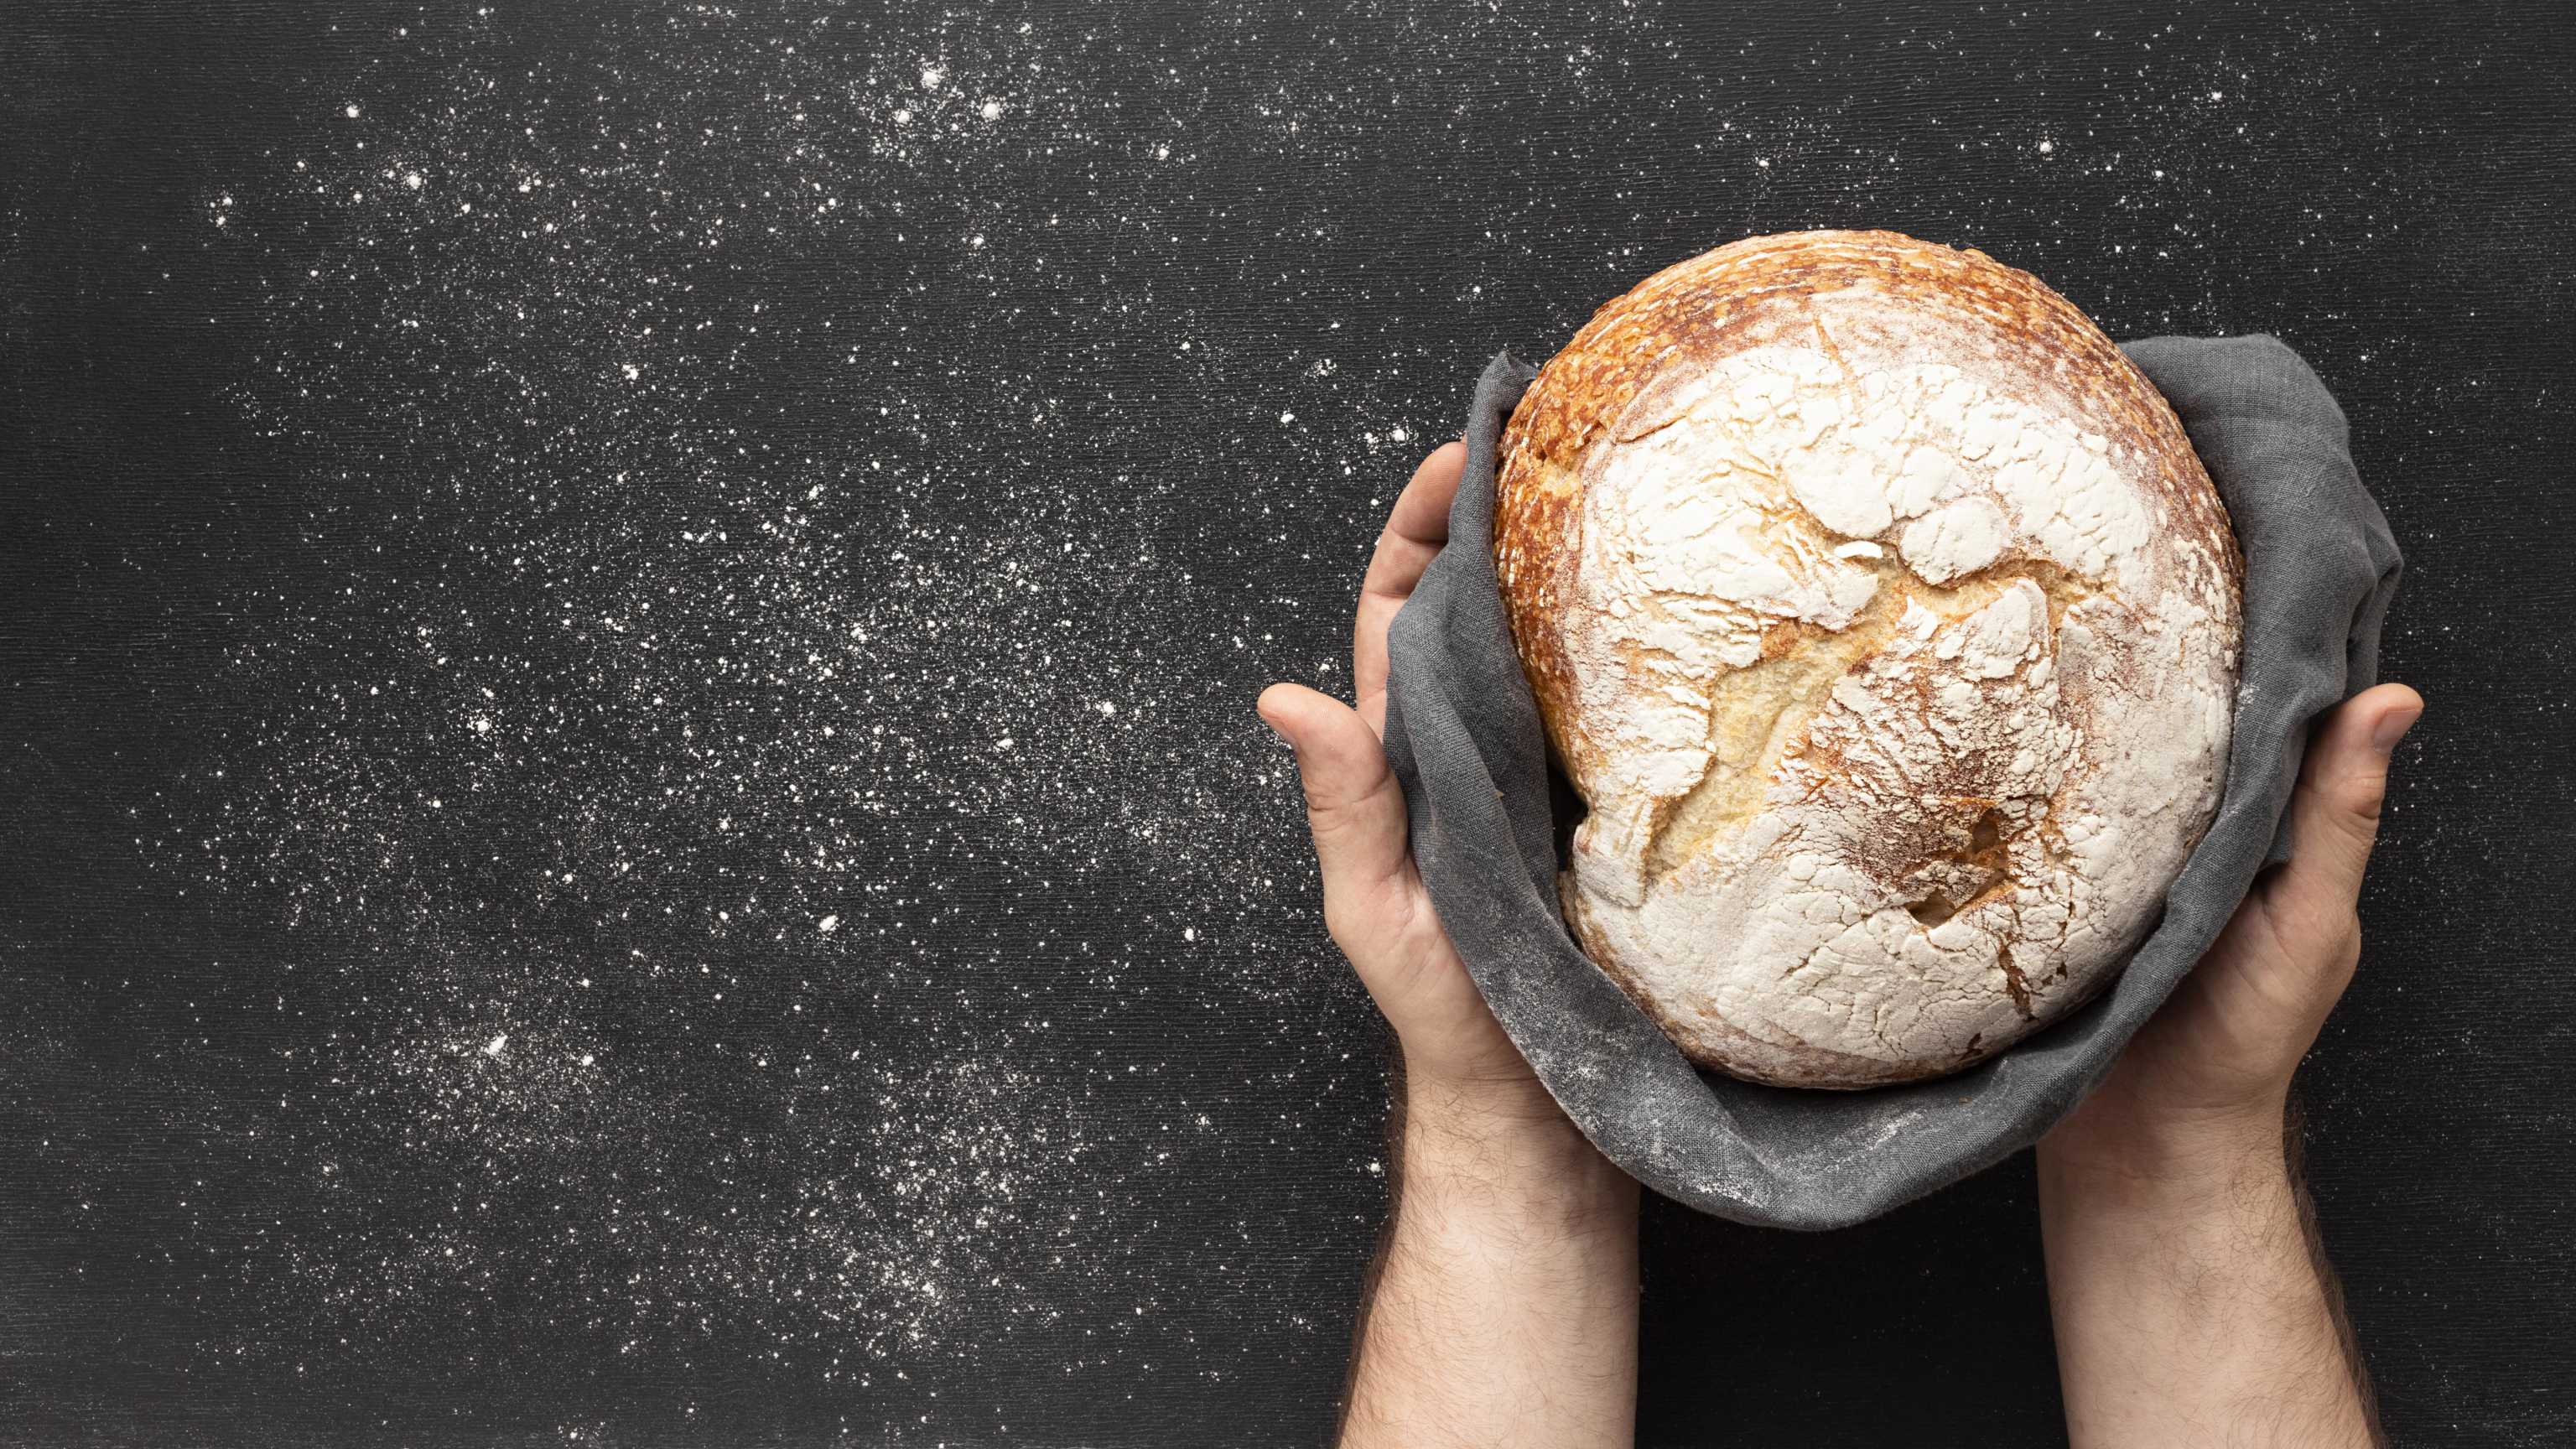 Backe Dein erstes eigenes Brot zuhause - Anleitung für Anfänger